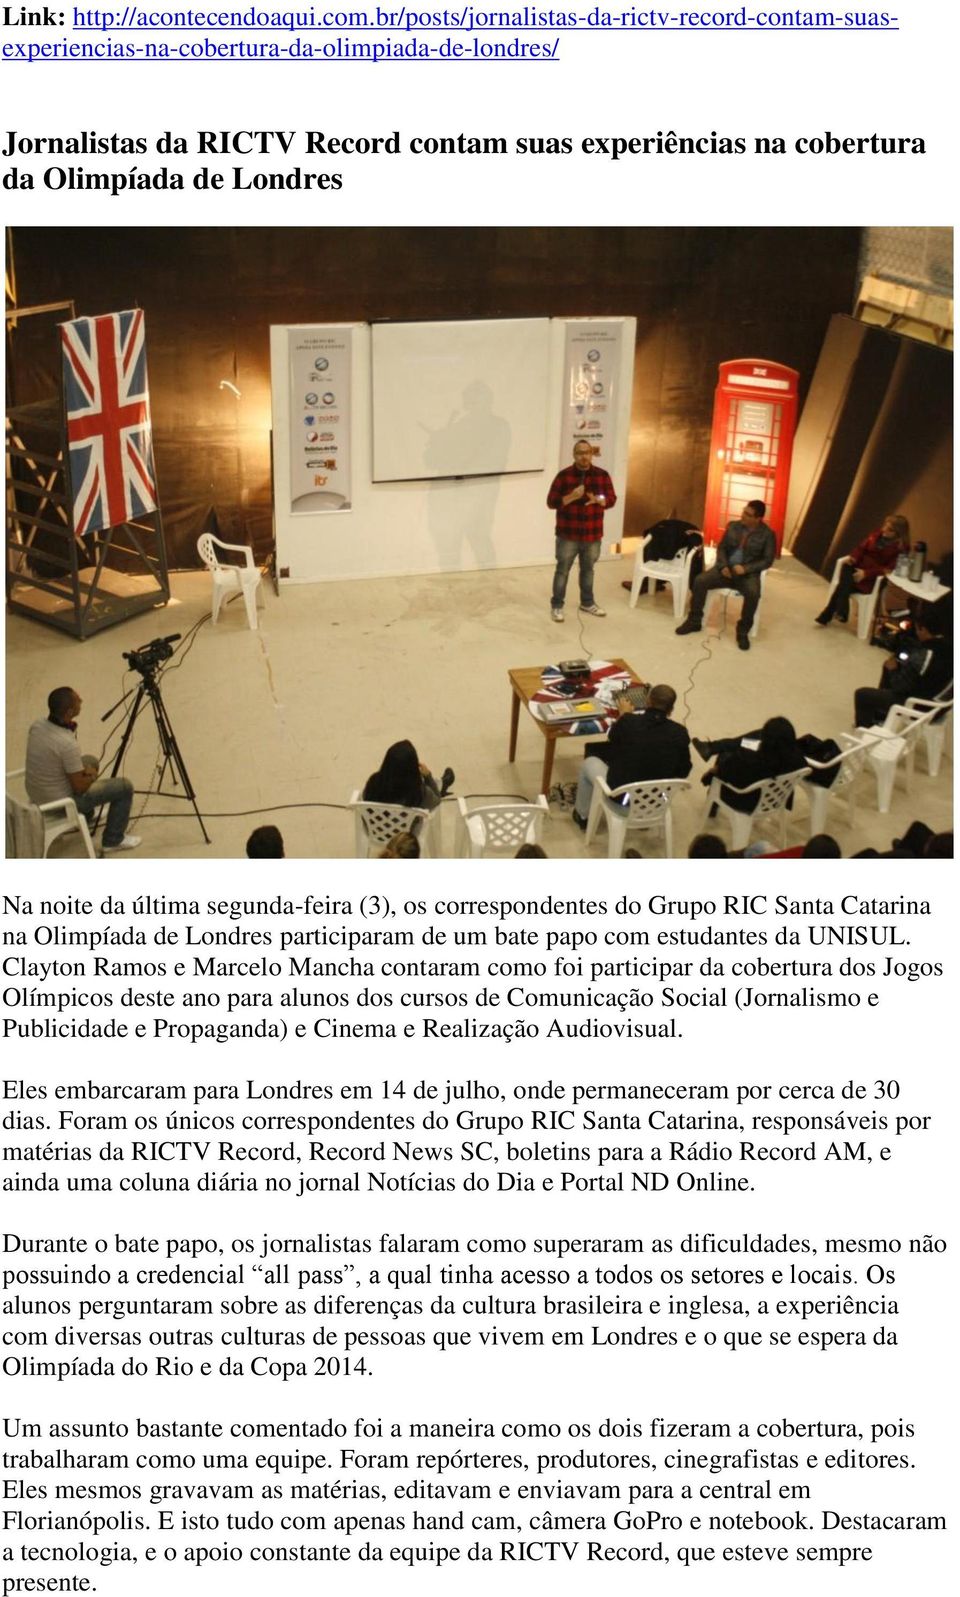 da última segunda-feira (3), os correspondentes do Grupo RIC Santa Catarina na Olimpíada de Londres participaram de um bate papo com estudantes da UNISUL.